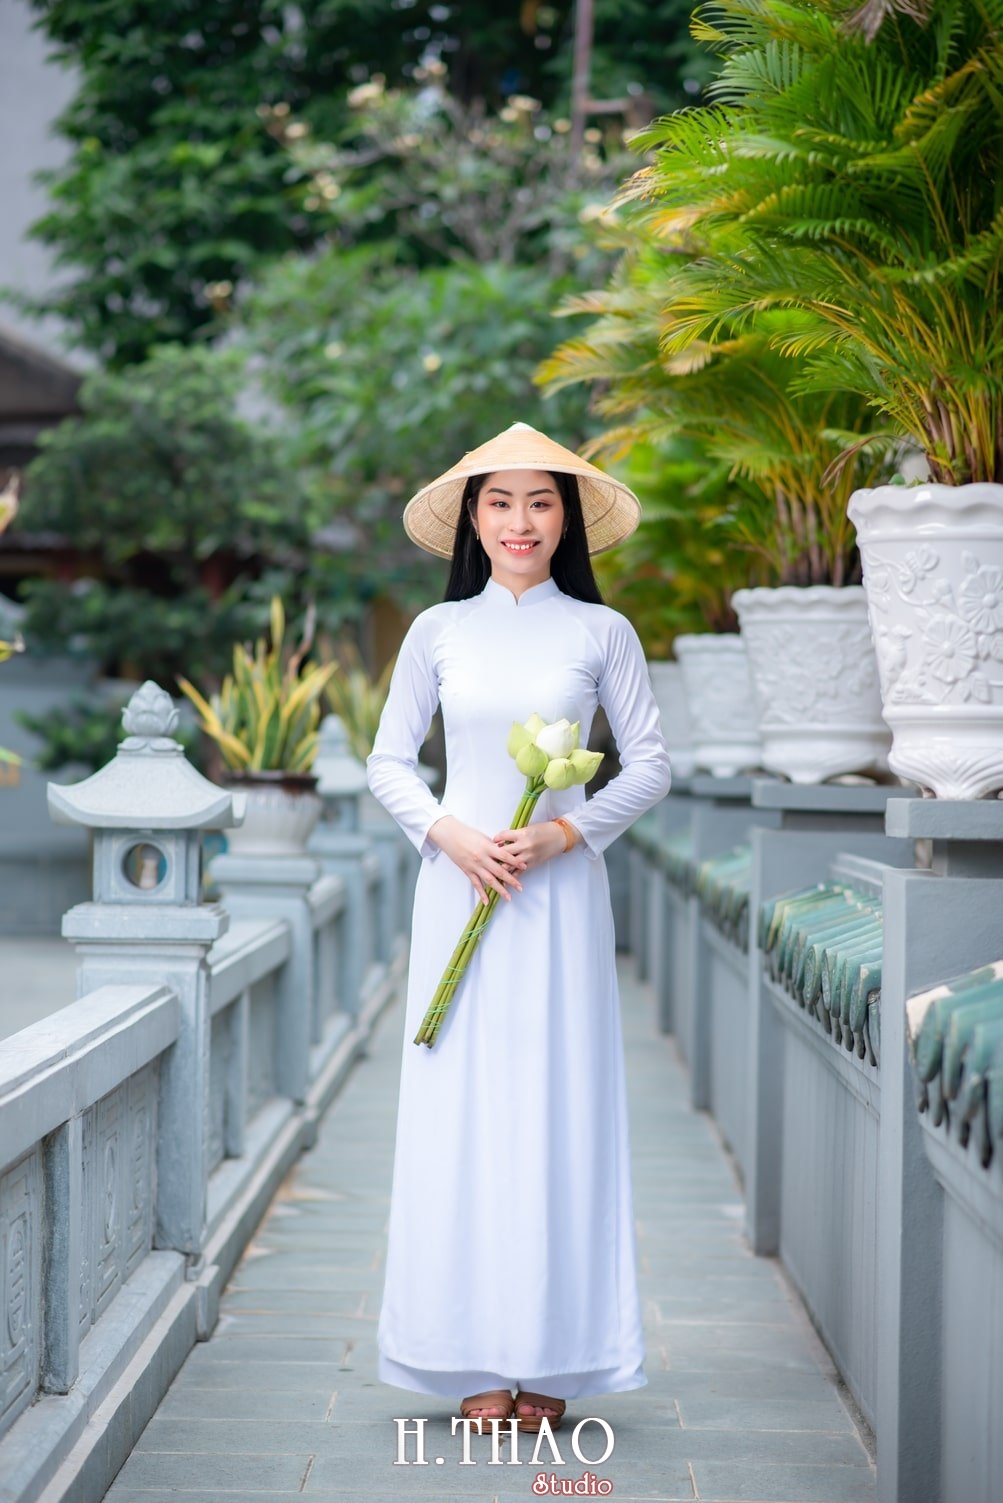 Ao dai trang 3 - Địa điểm chụp ảnh áo dài đẹp ở Thành phố Hồ Chí Minh